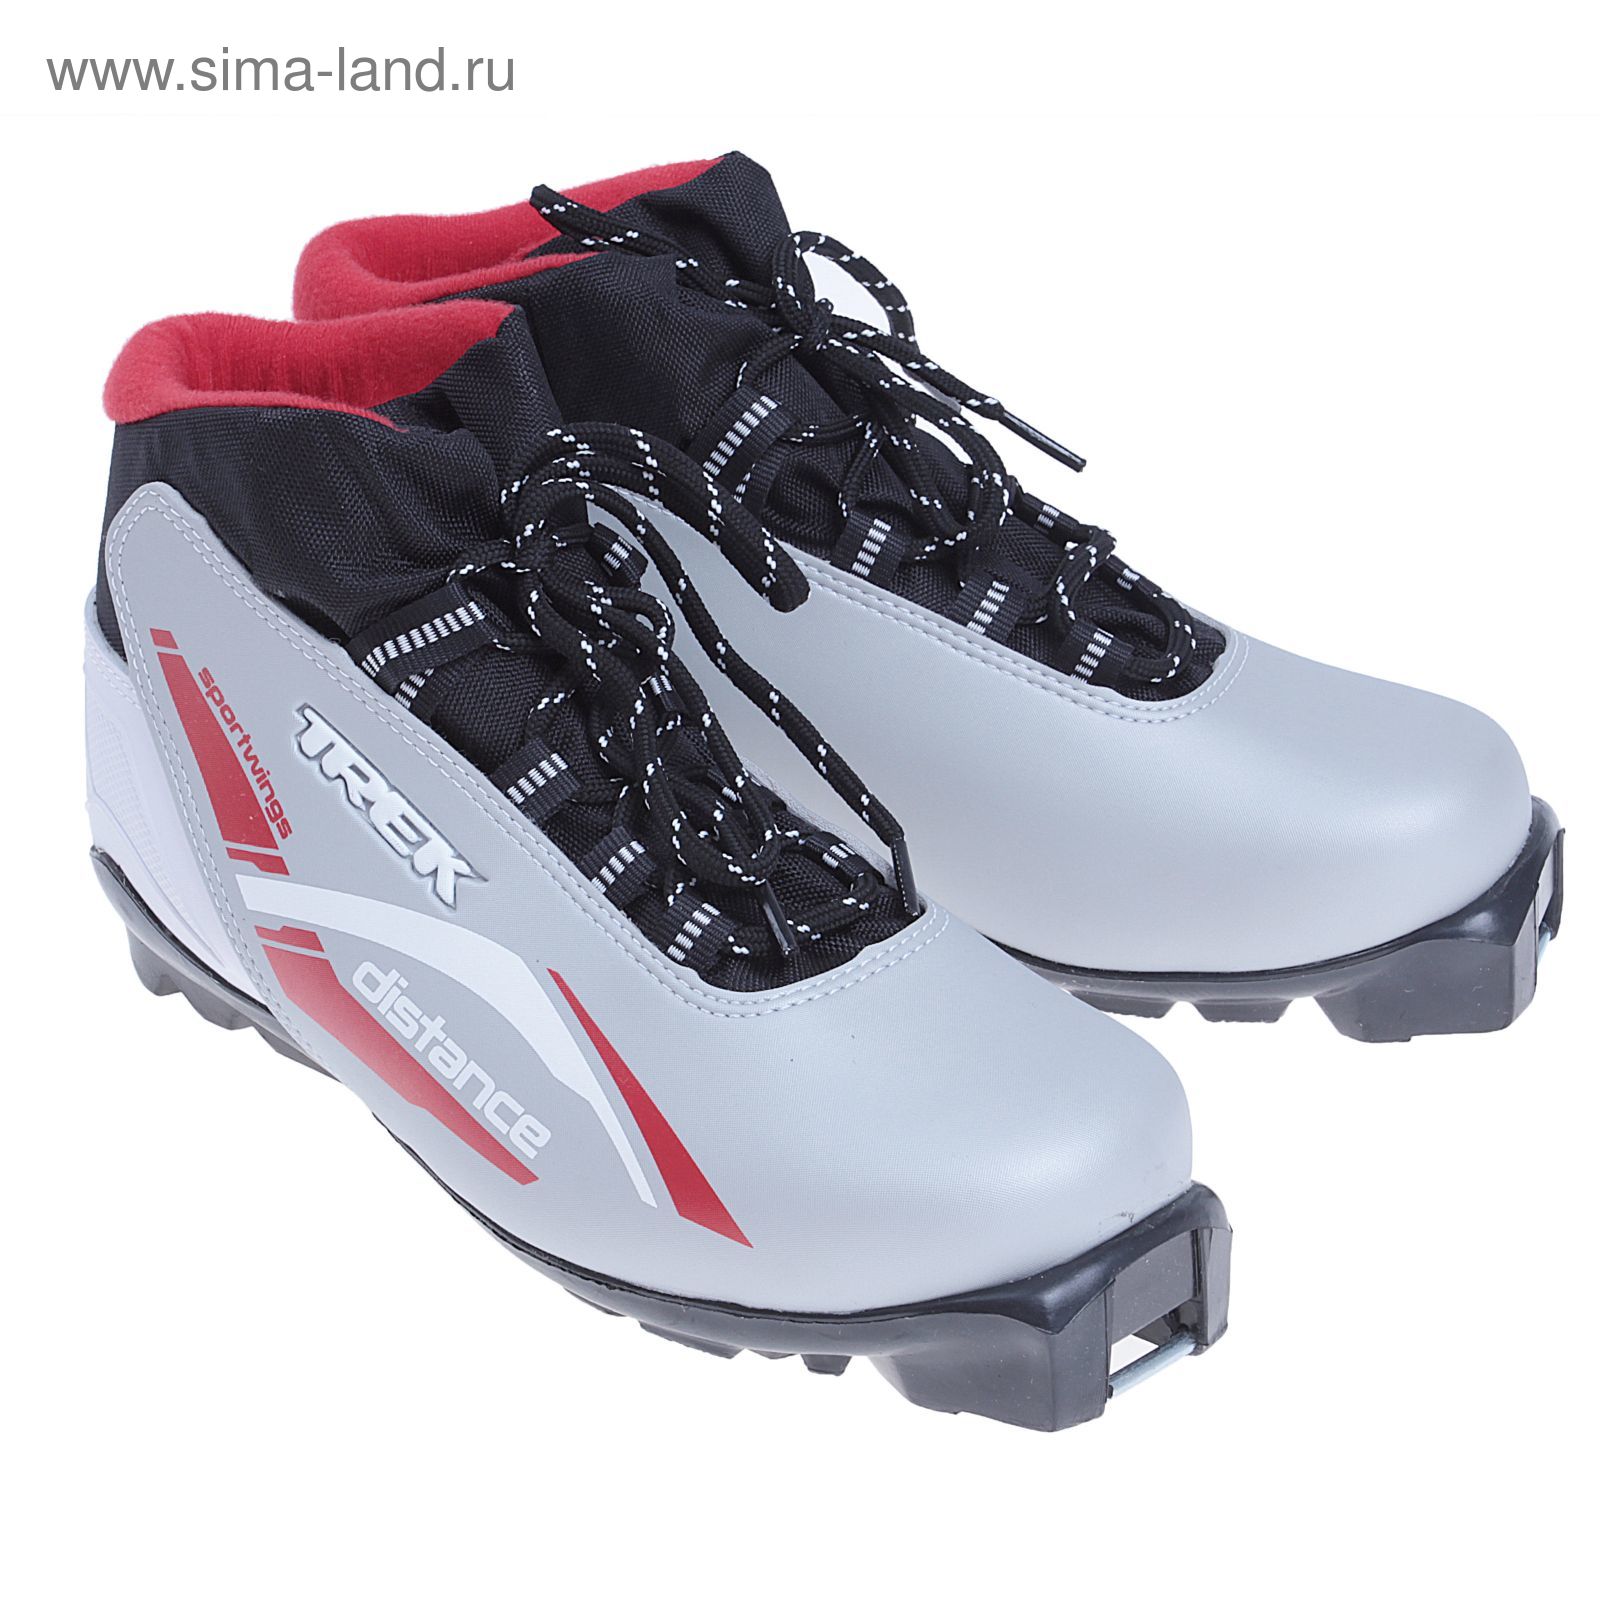 Ботинки лыжные TREK Distance SNS ИК (серебряный, лого красный) (р. 41)